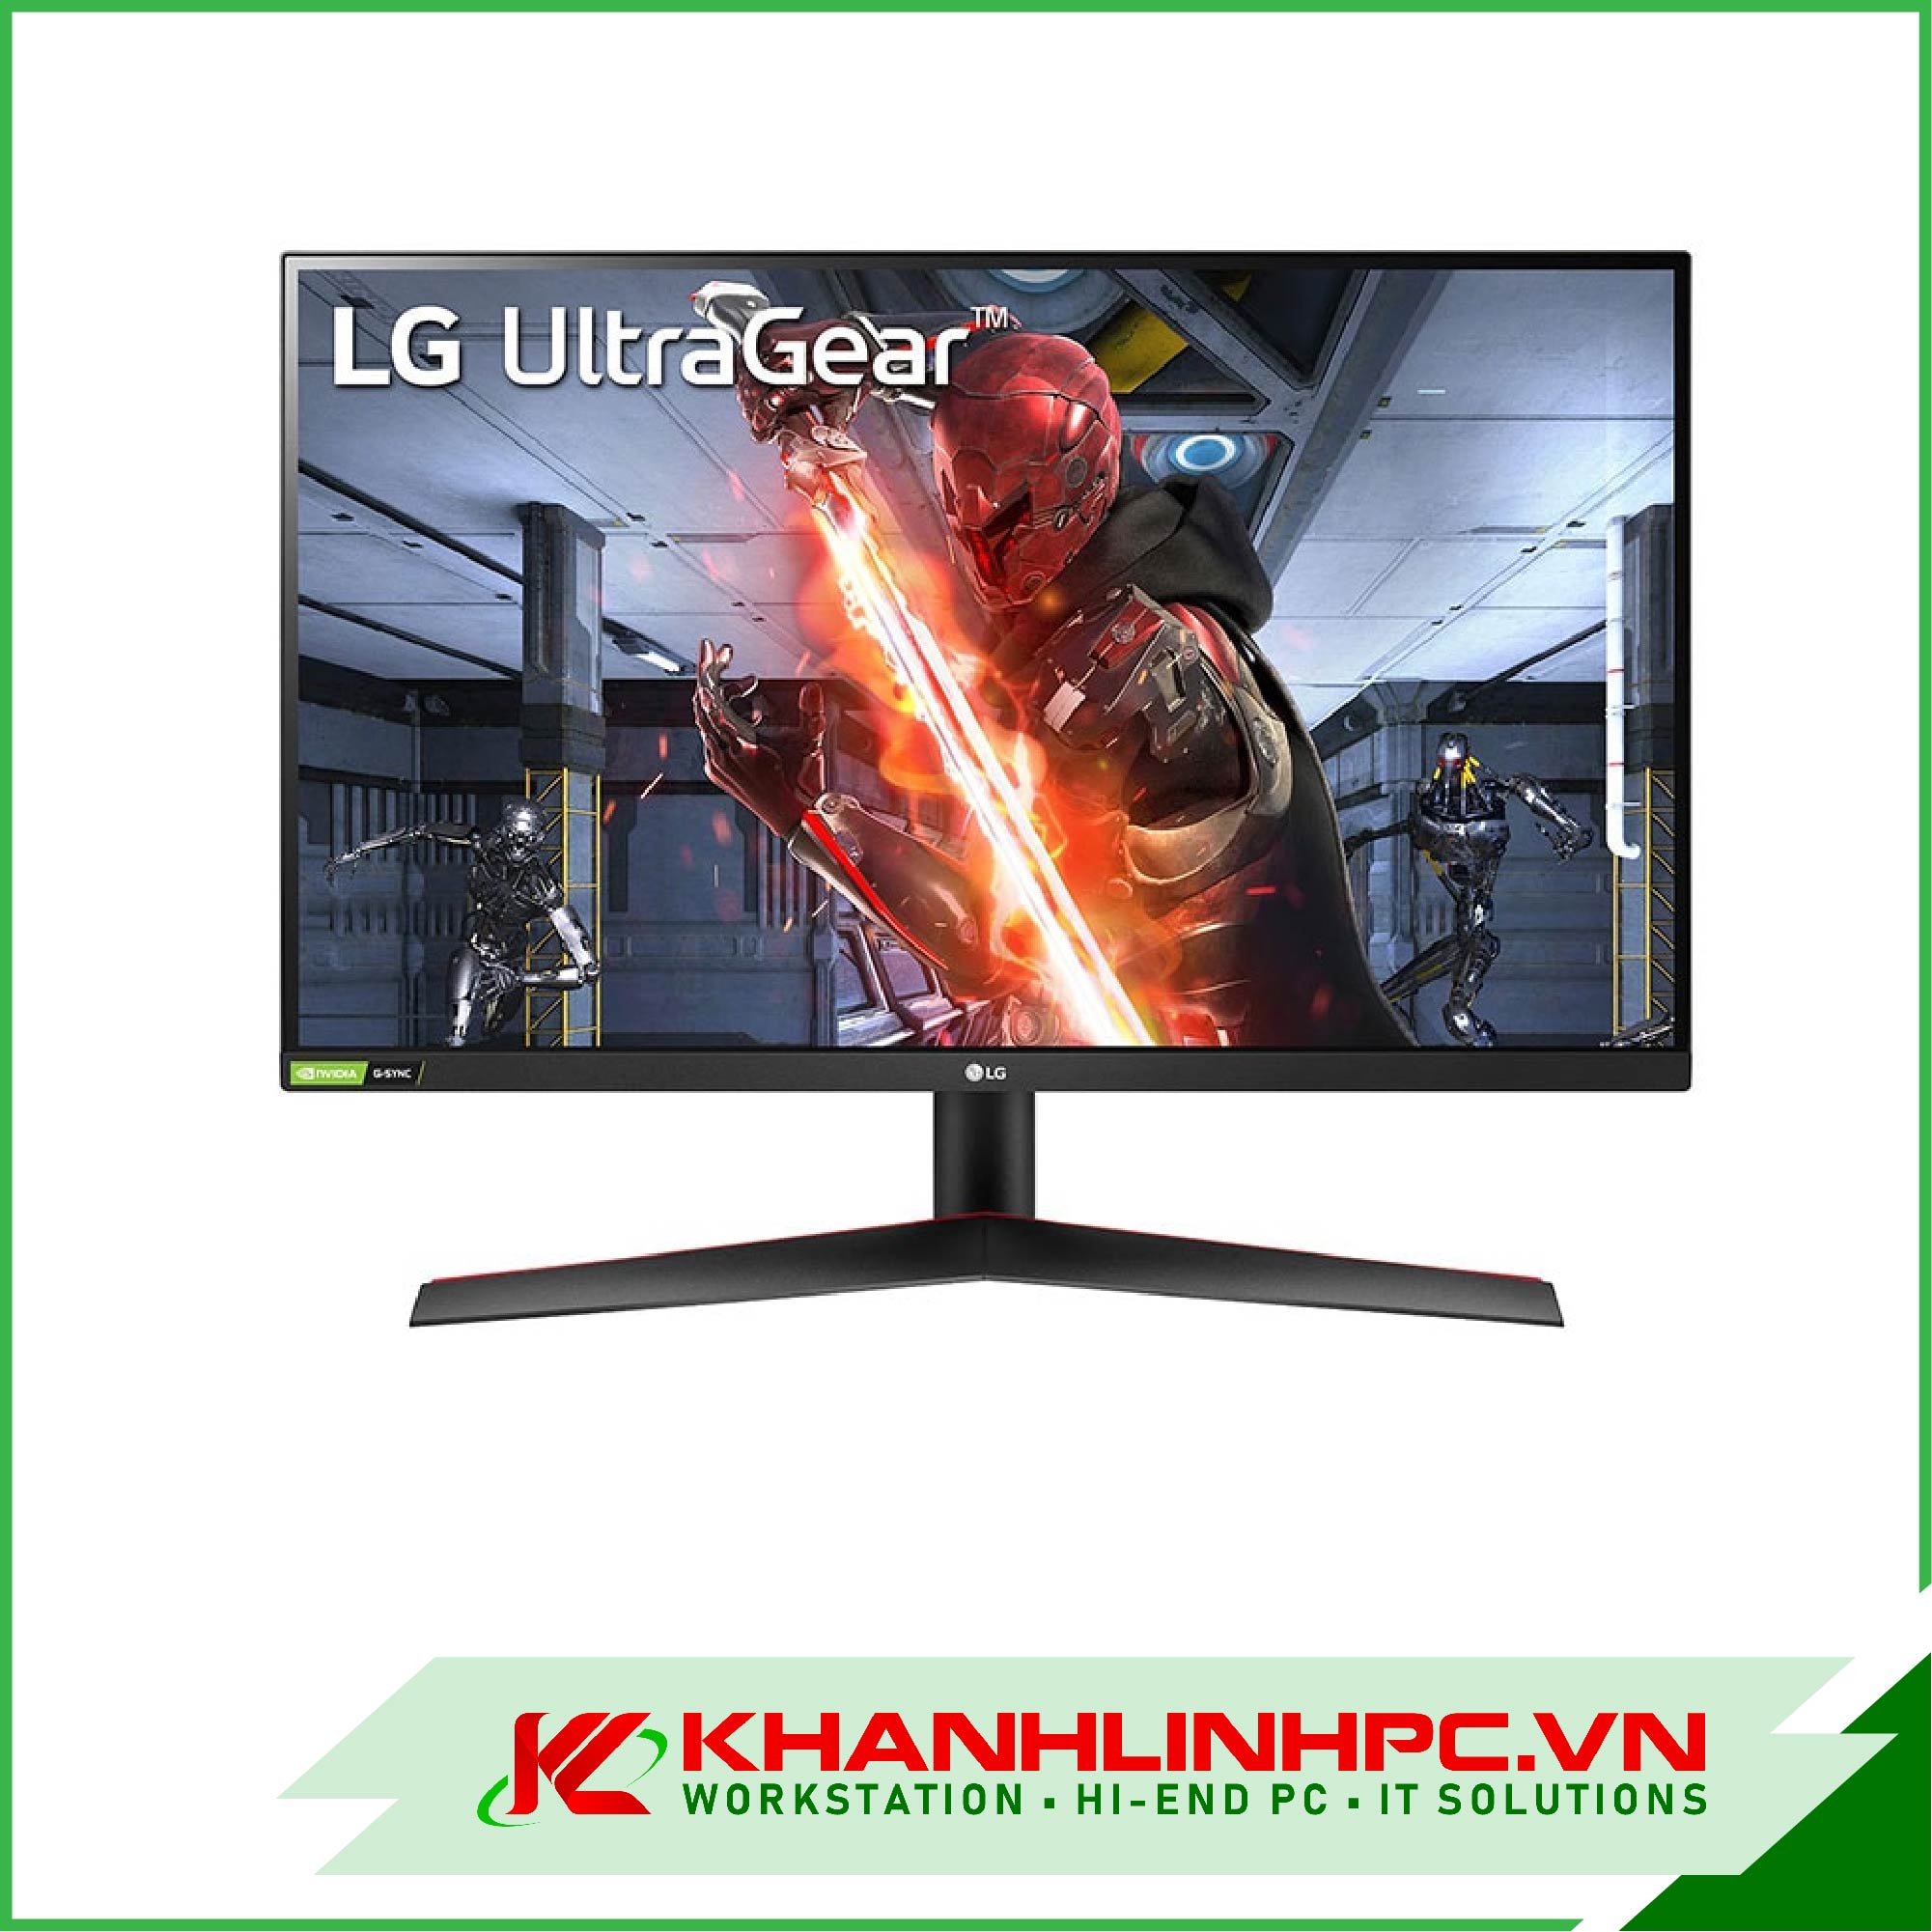 LG UltraGear 27GN800-B (27